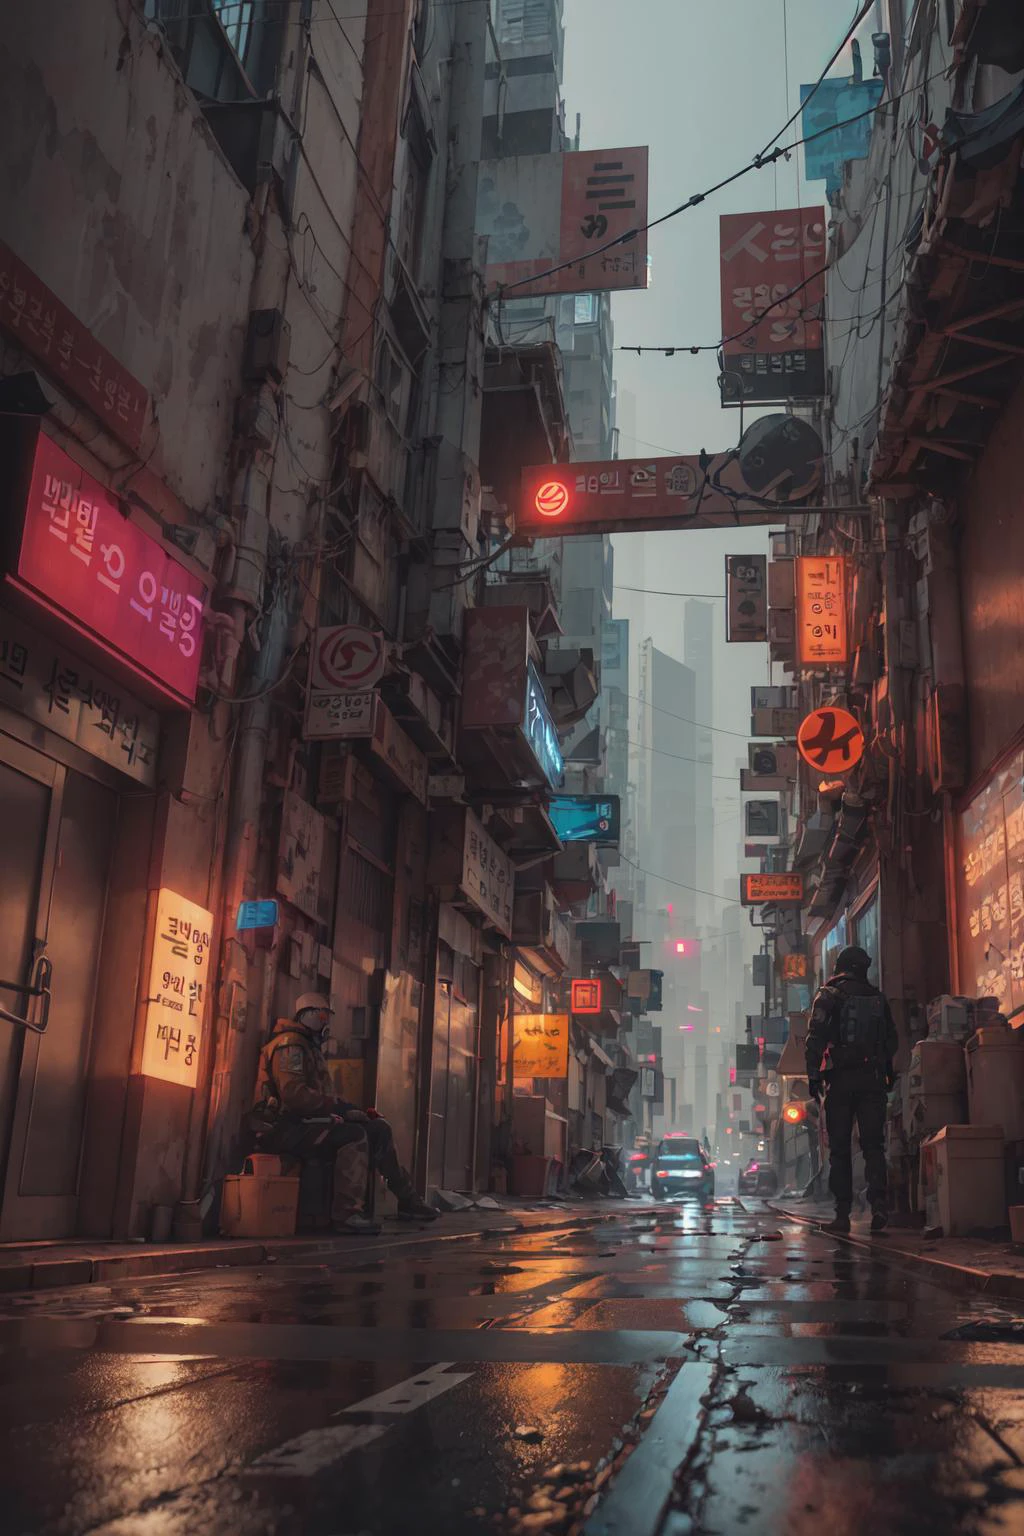  союзник в Сеуле, Киберпанк-город из научно-фантастического фильма, пустая улица, Корейский, Корейский signs, сложный, сверхдетализированный, реалистичный, ultra-реалистичный, высокое качество, ультра детализация, сумасшедшая деталь, фотореализм, 8К